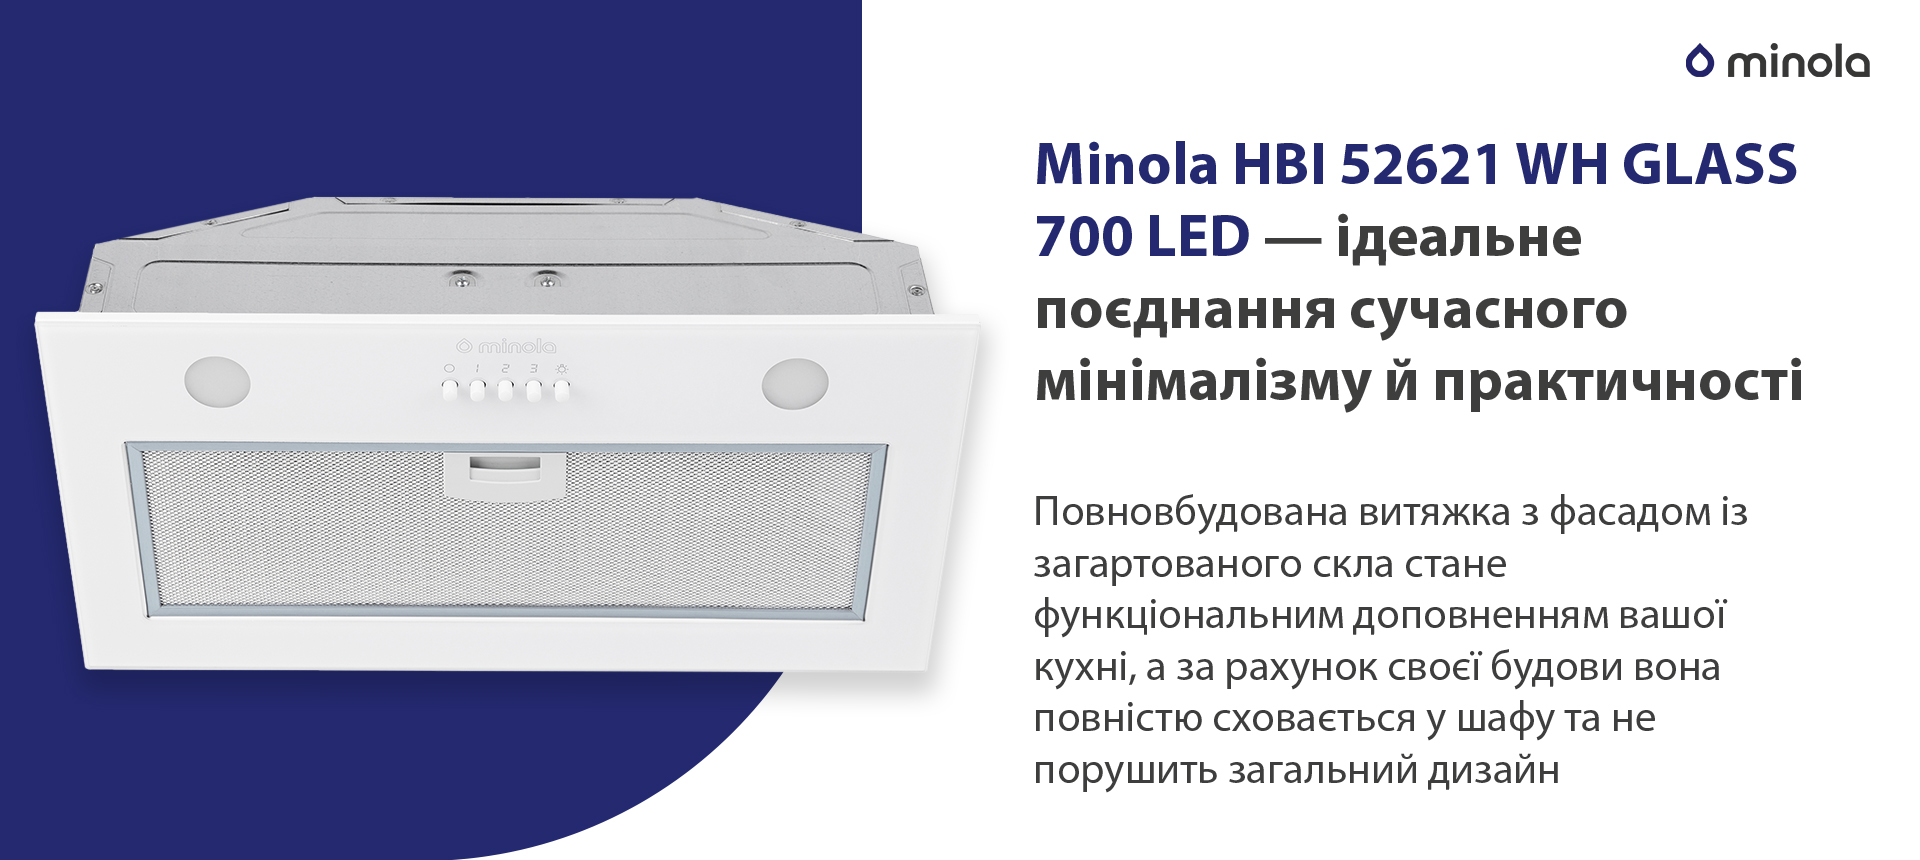 Minola HBI 52621 WH GLASS 700 LED в магазині в Києві - фото 10